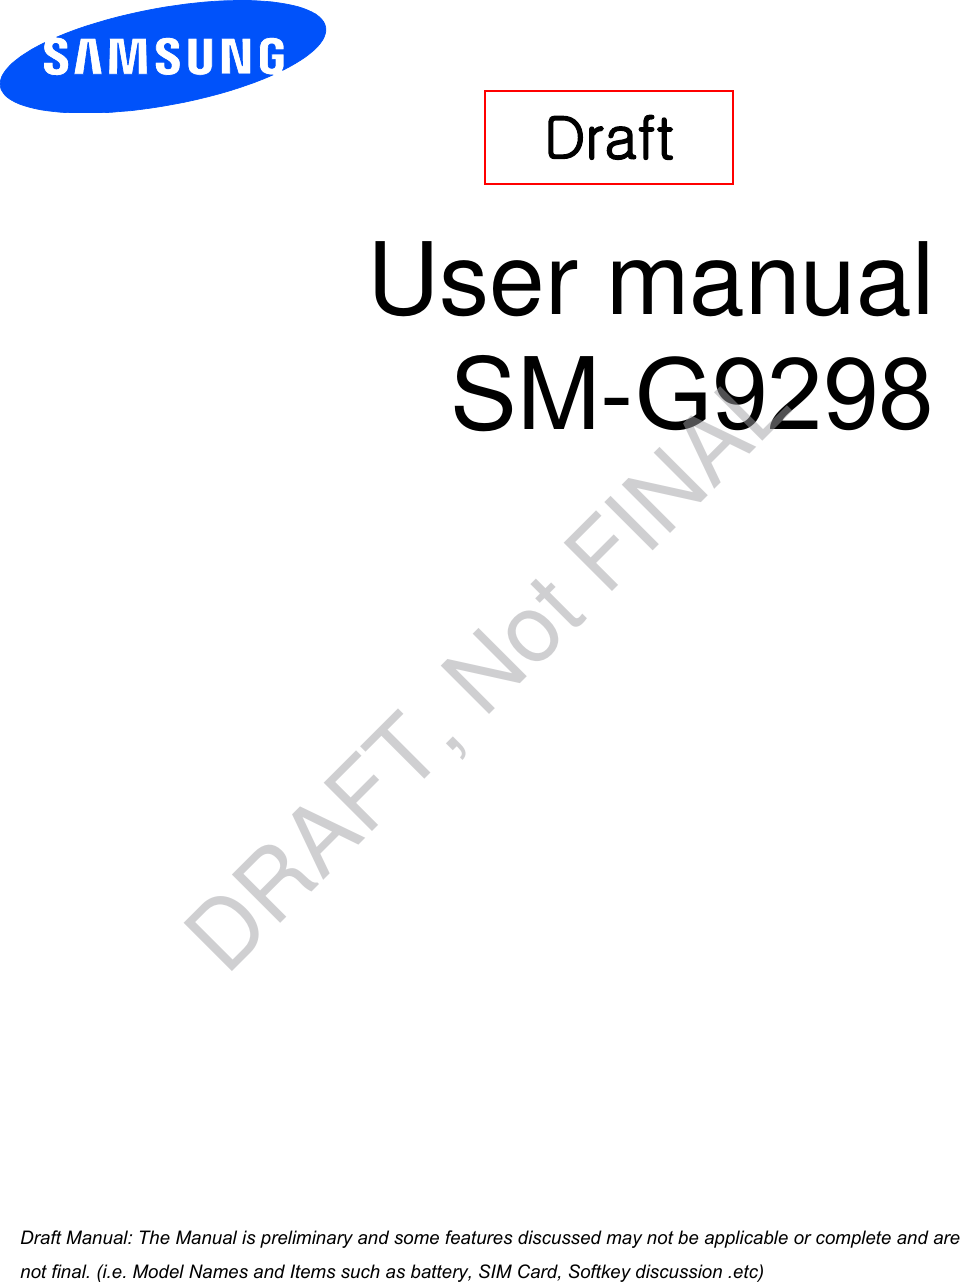 User manual SM-G9298 Draft a ana  ana  na and  a dd a n  aa   and a n na  d a and   a a  ad  dn DRAFT, Not FINAL